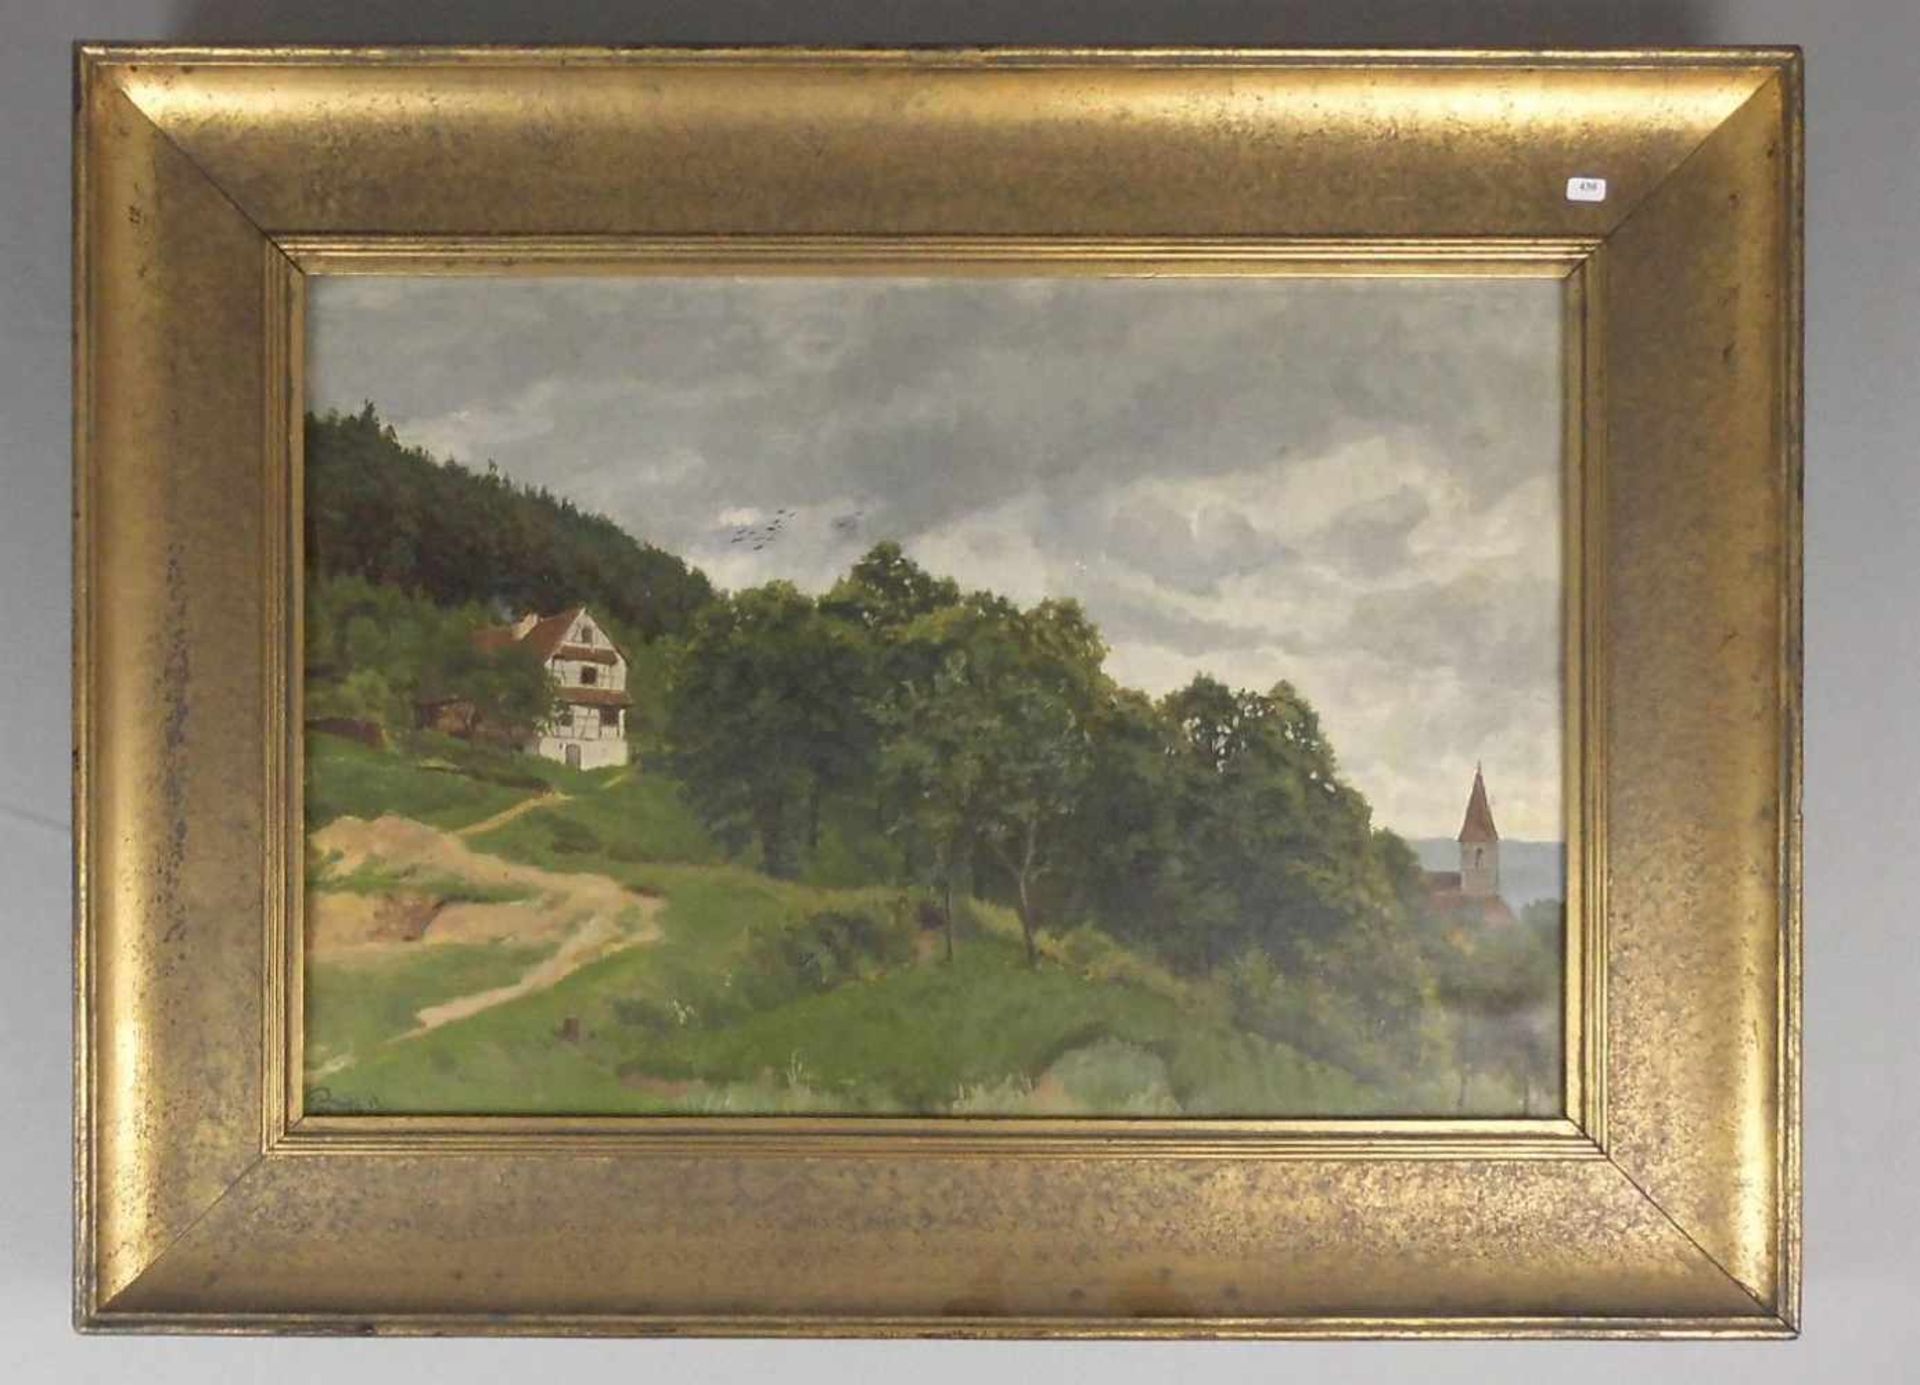 VON RAVENSTEIN, PAUL (Breslau 1854-1938 Karlsruhe), Gemälde / painting: "Bauernhaus am Hang mit